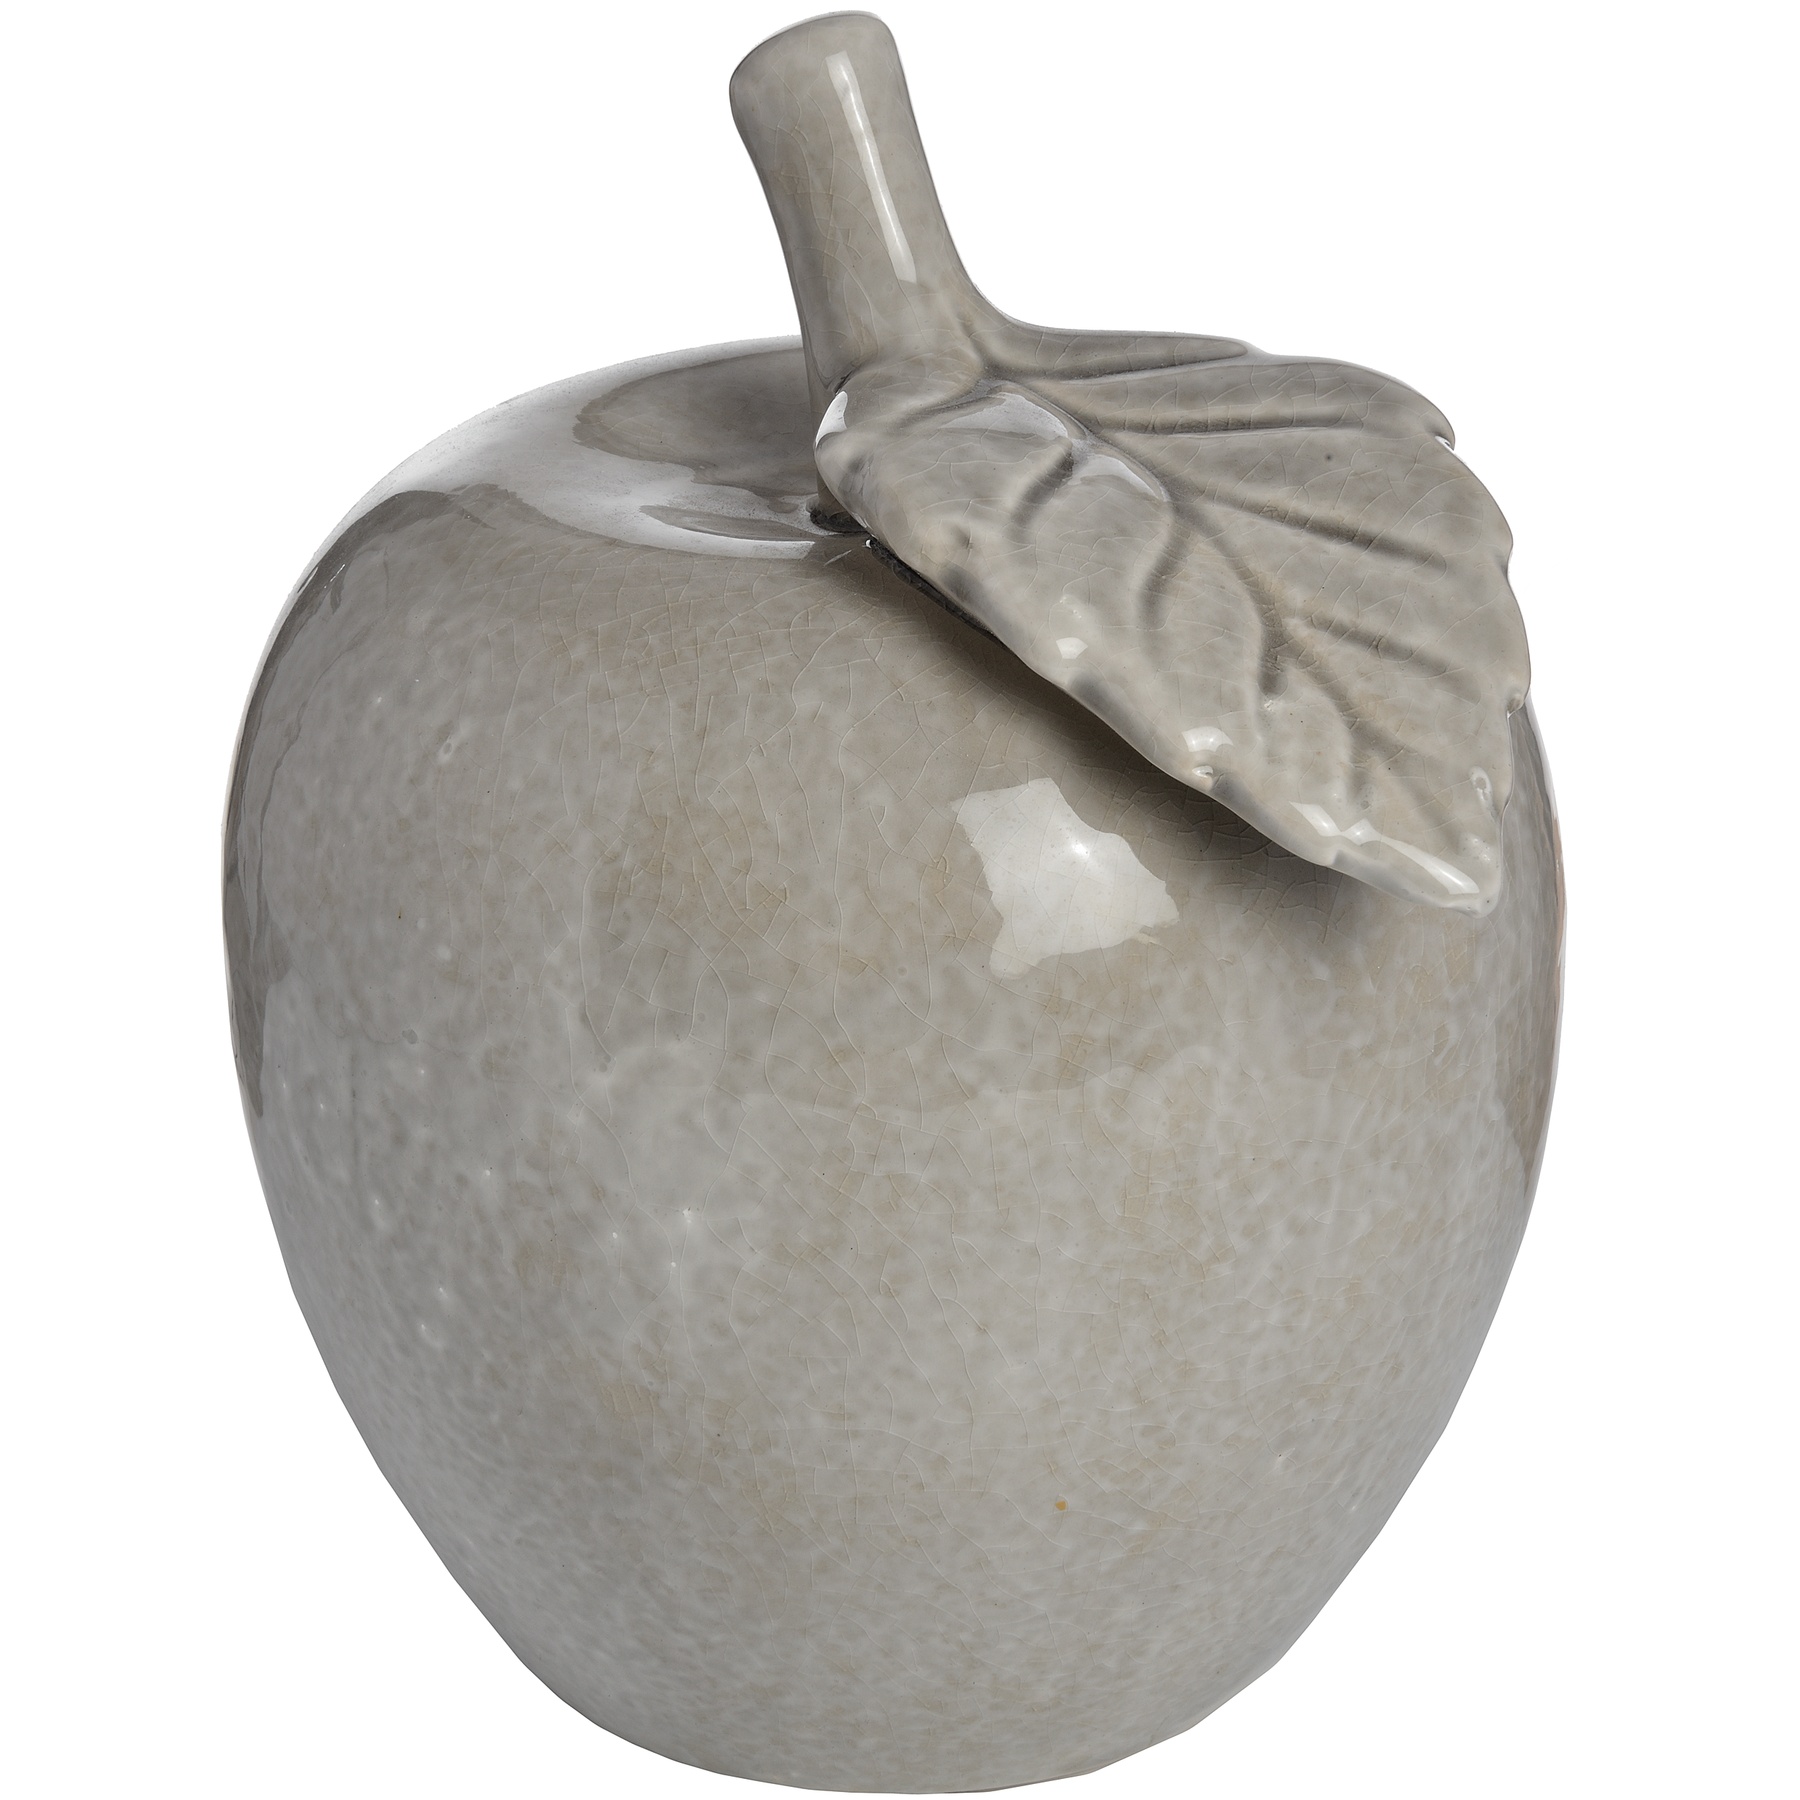 Antique Grey Large Ceramic Apple - Image 1